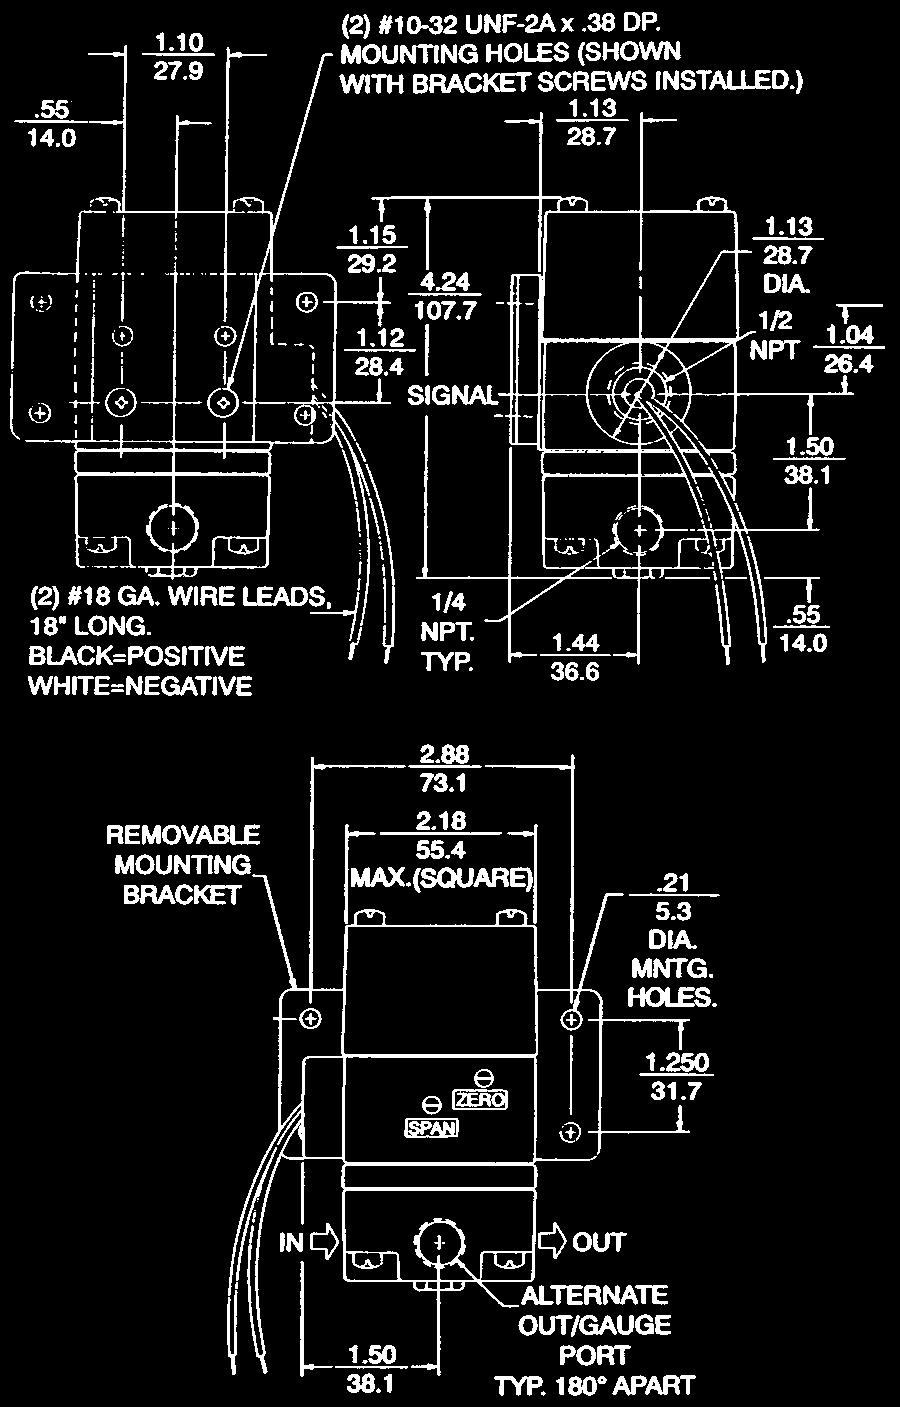 How To Order Precision Instrumentation R 83 1 02 F G Model R = Regulator Series 83 = I/P, E/P Transducer Style 1